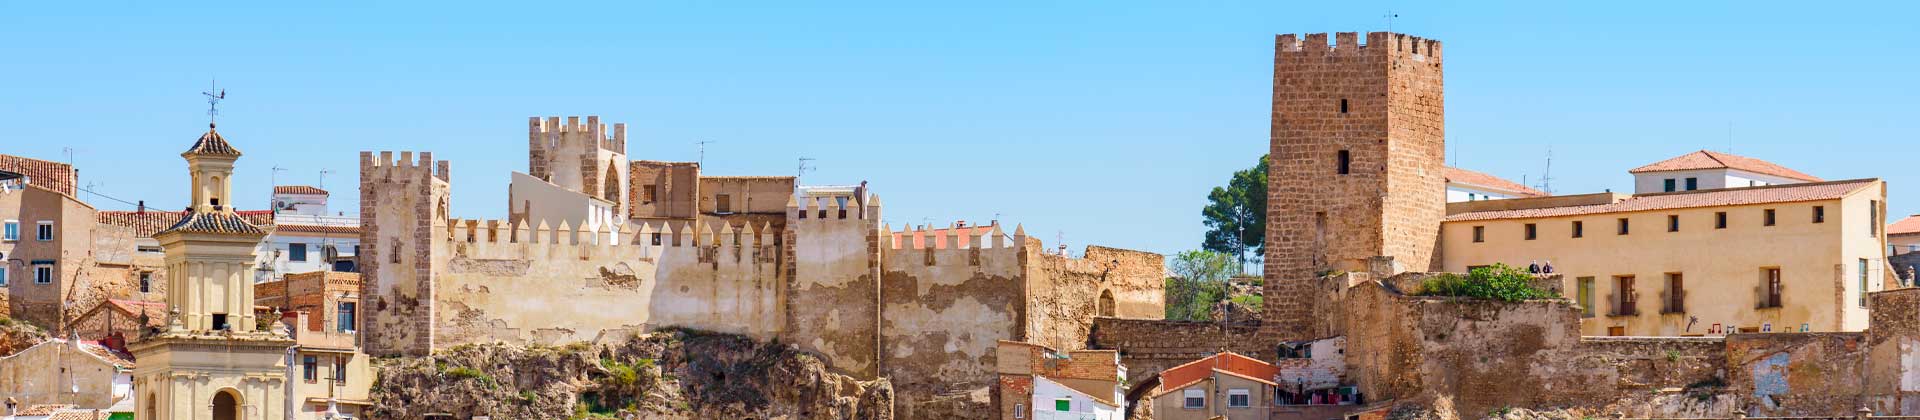 Buñol y el castillo en Valencia